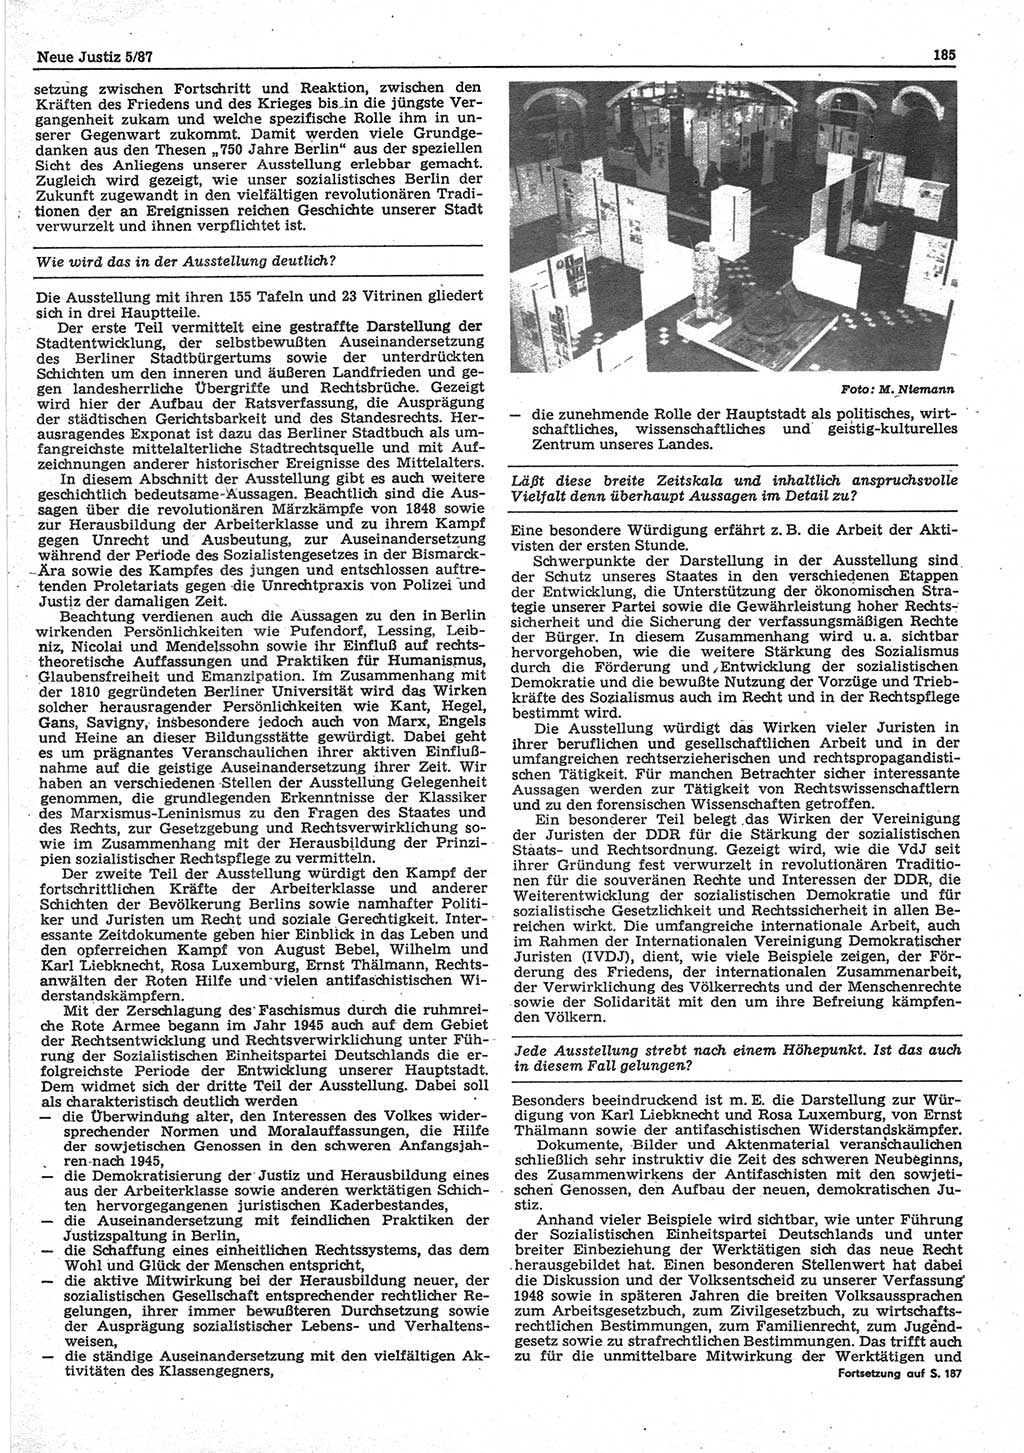 Neue Justiz (NJ), Zeitschrift für sozialistisches Recht und Gesetzlichkeit [Deutsche Demokratische Republik (DDR)], 41. Jahrgang 1987, Seite 185 (NJ DDR 1987, S. 185)